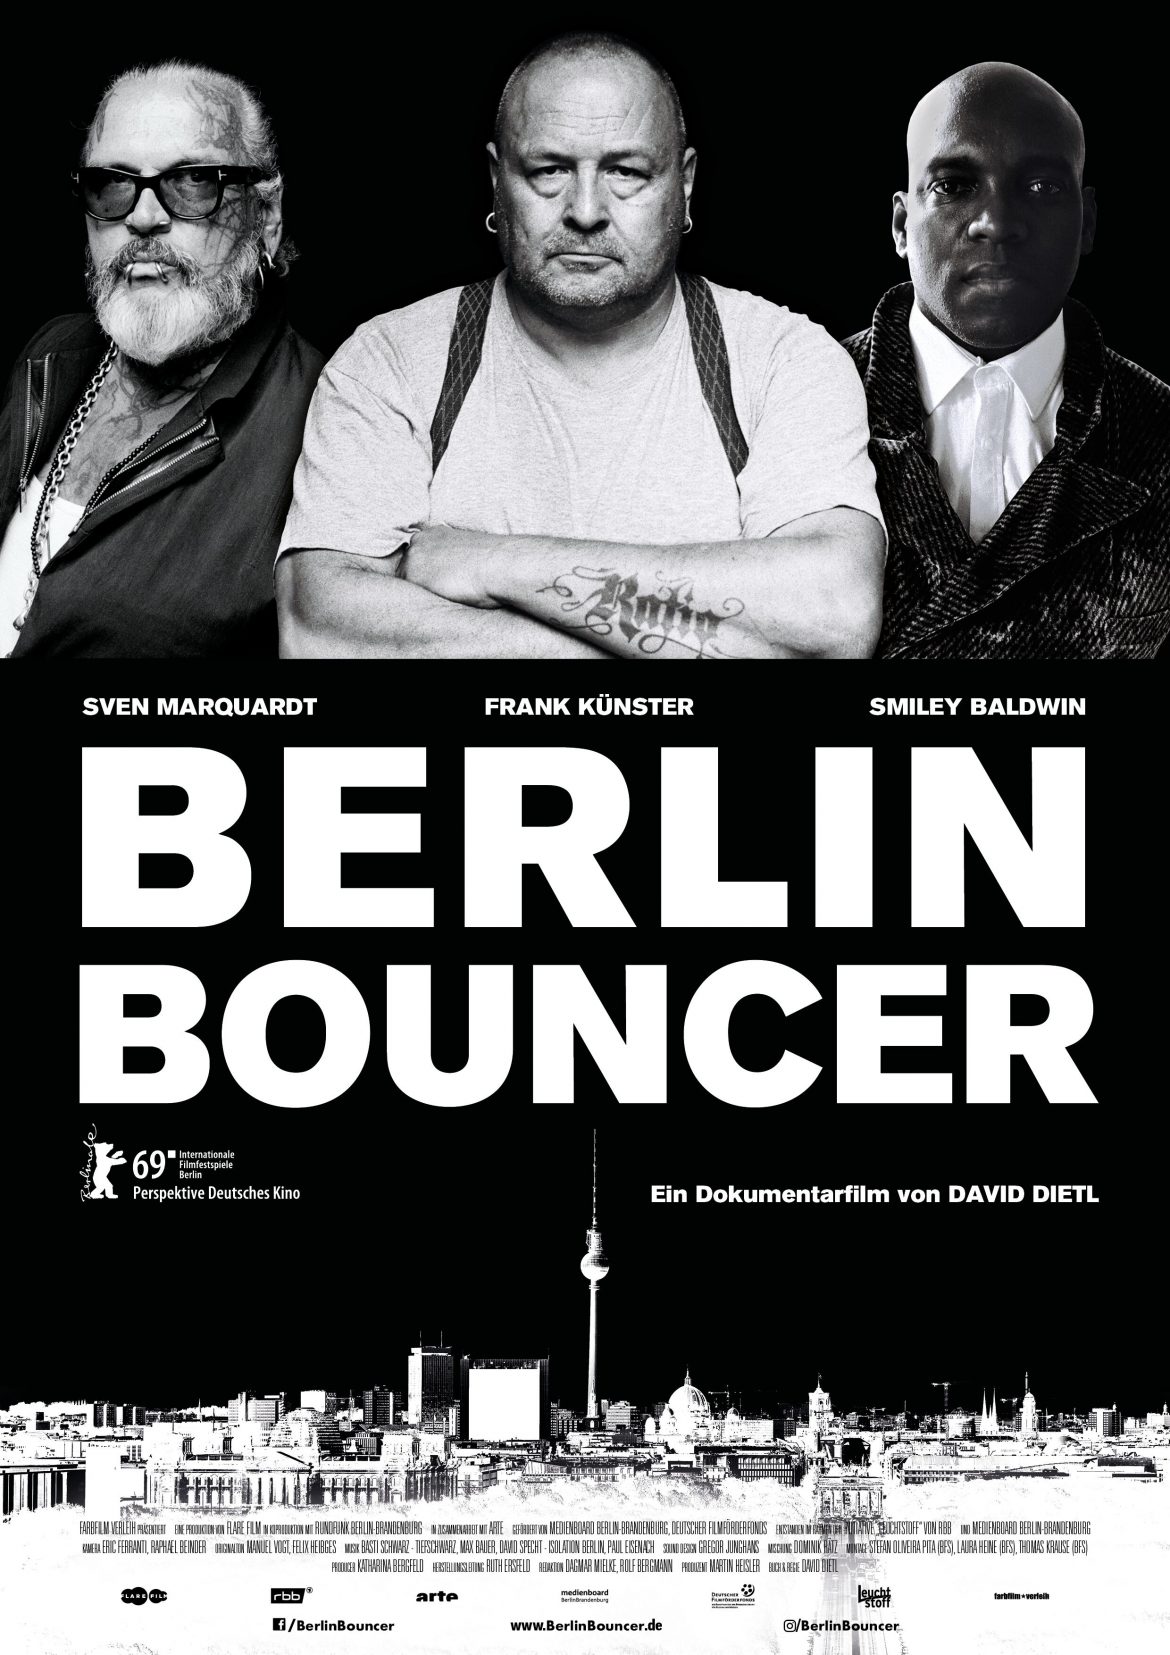 فيلم برلين باونسر الوثائقي باللغة الألمانية